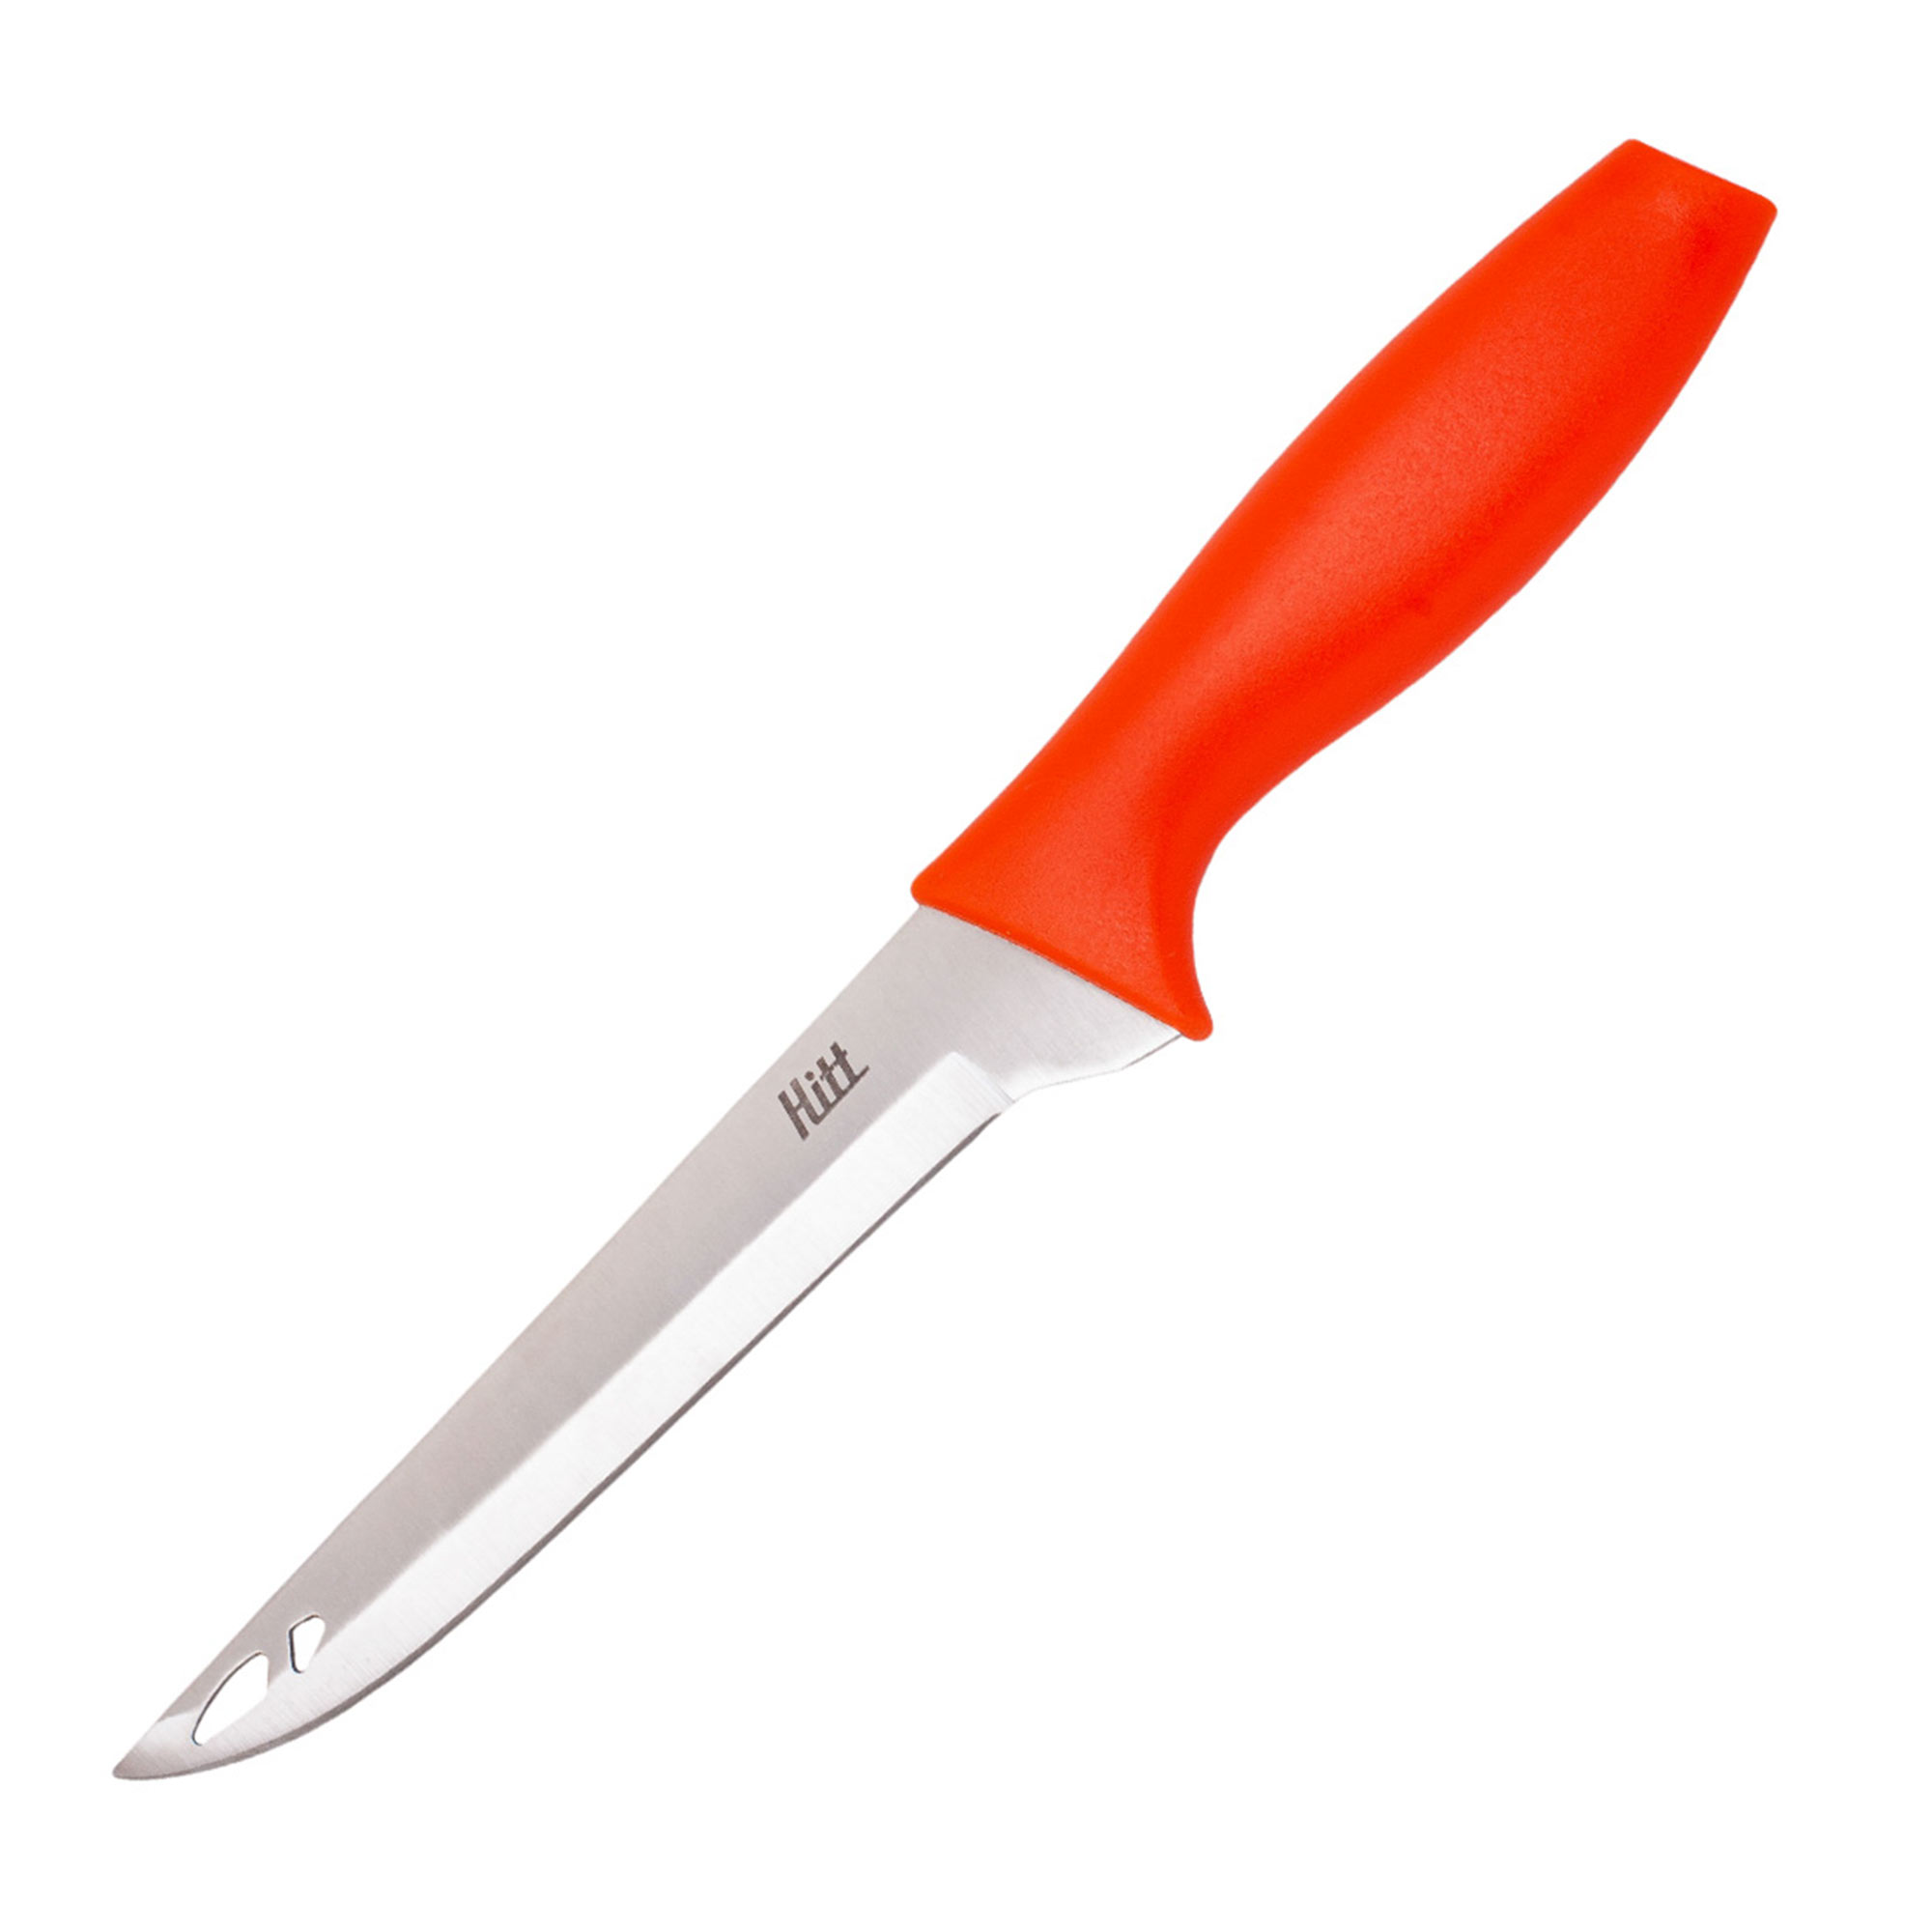 Нож Hitt Colorfest филейный 15 см нож hitt colorfest филейный 15 см